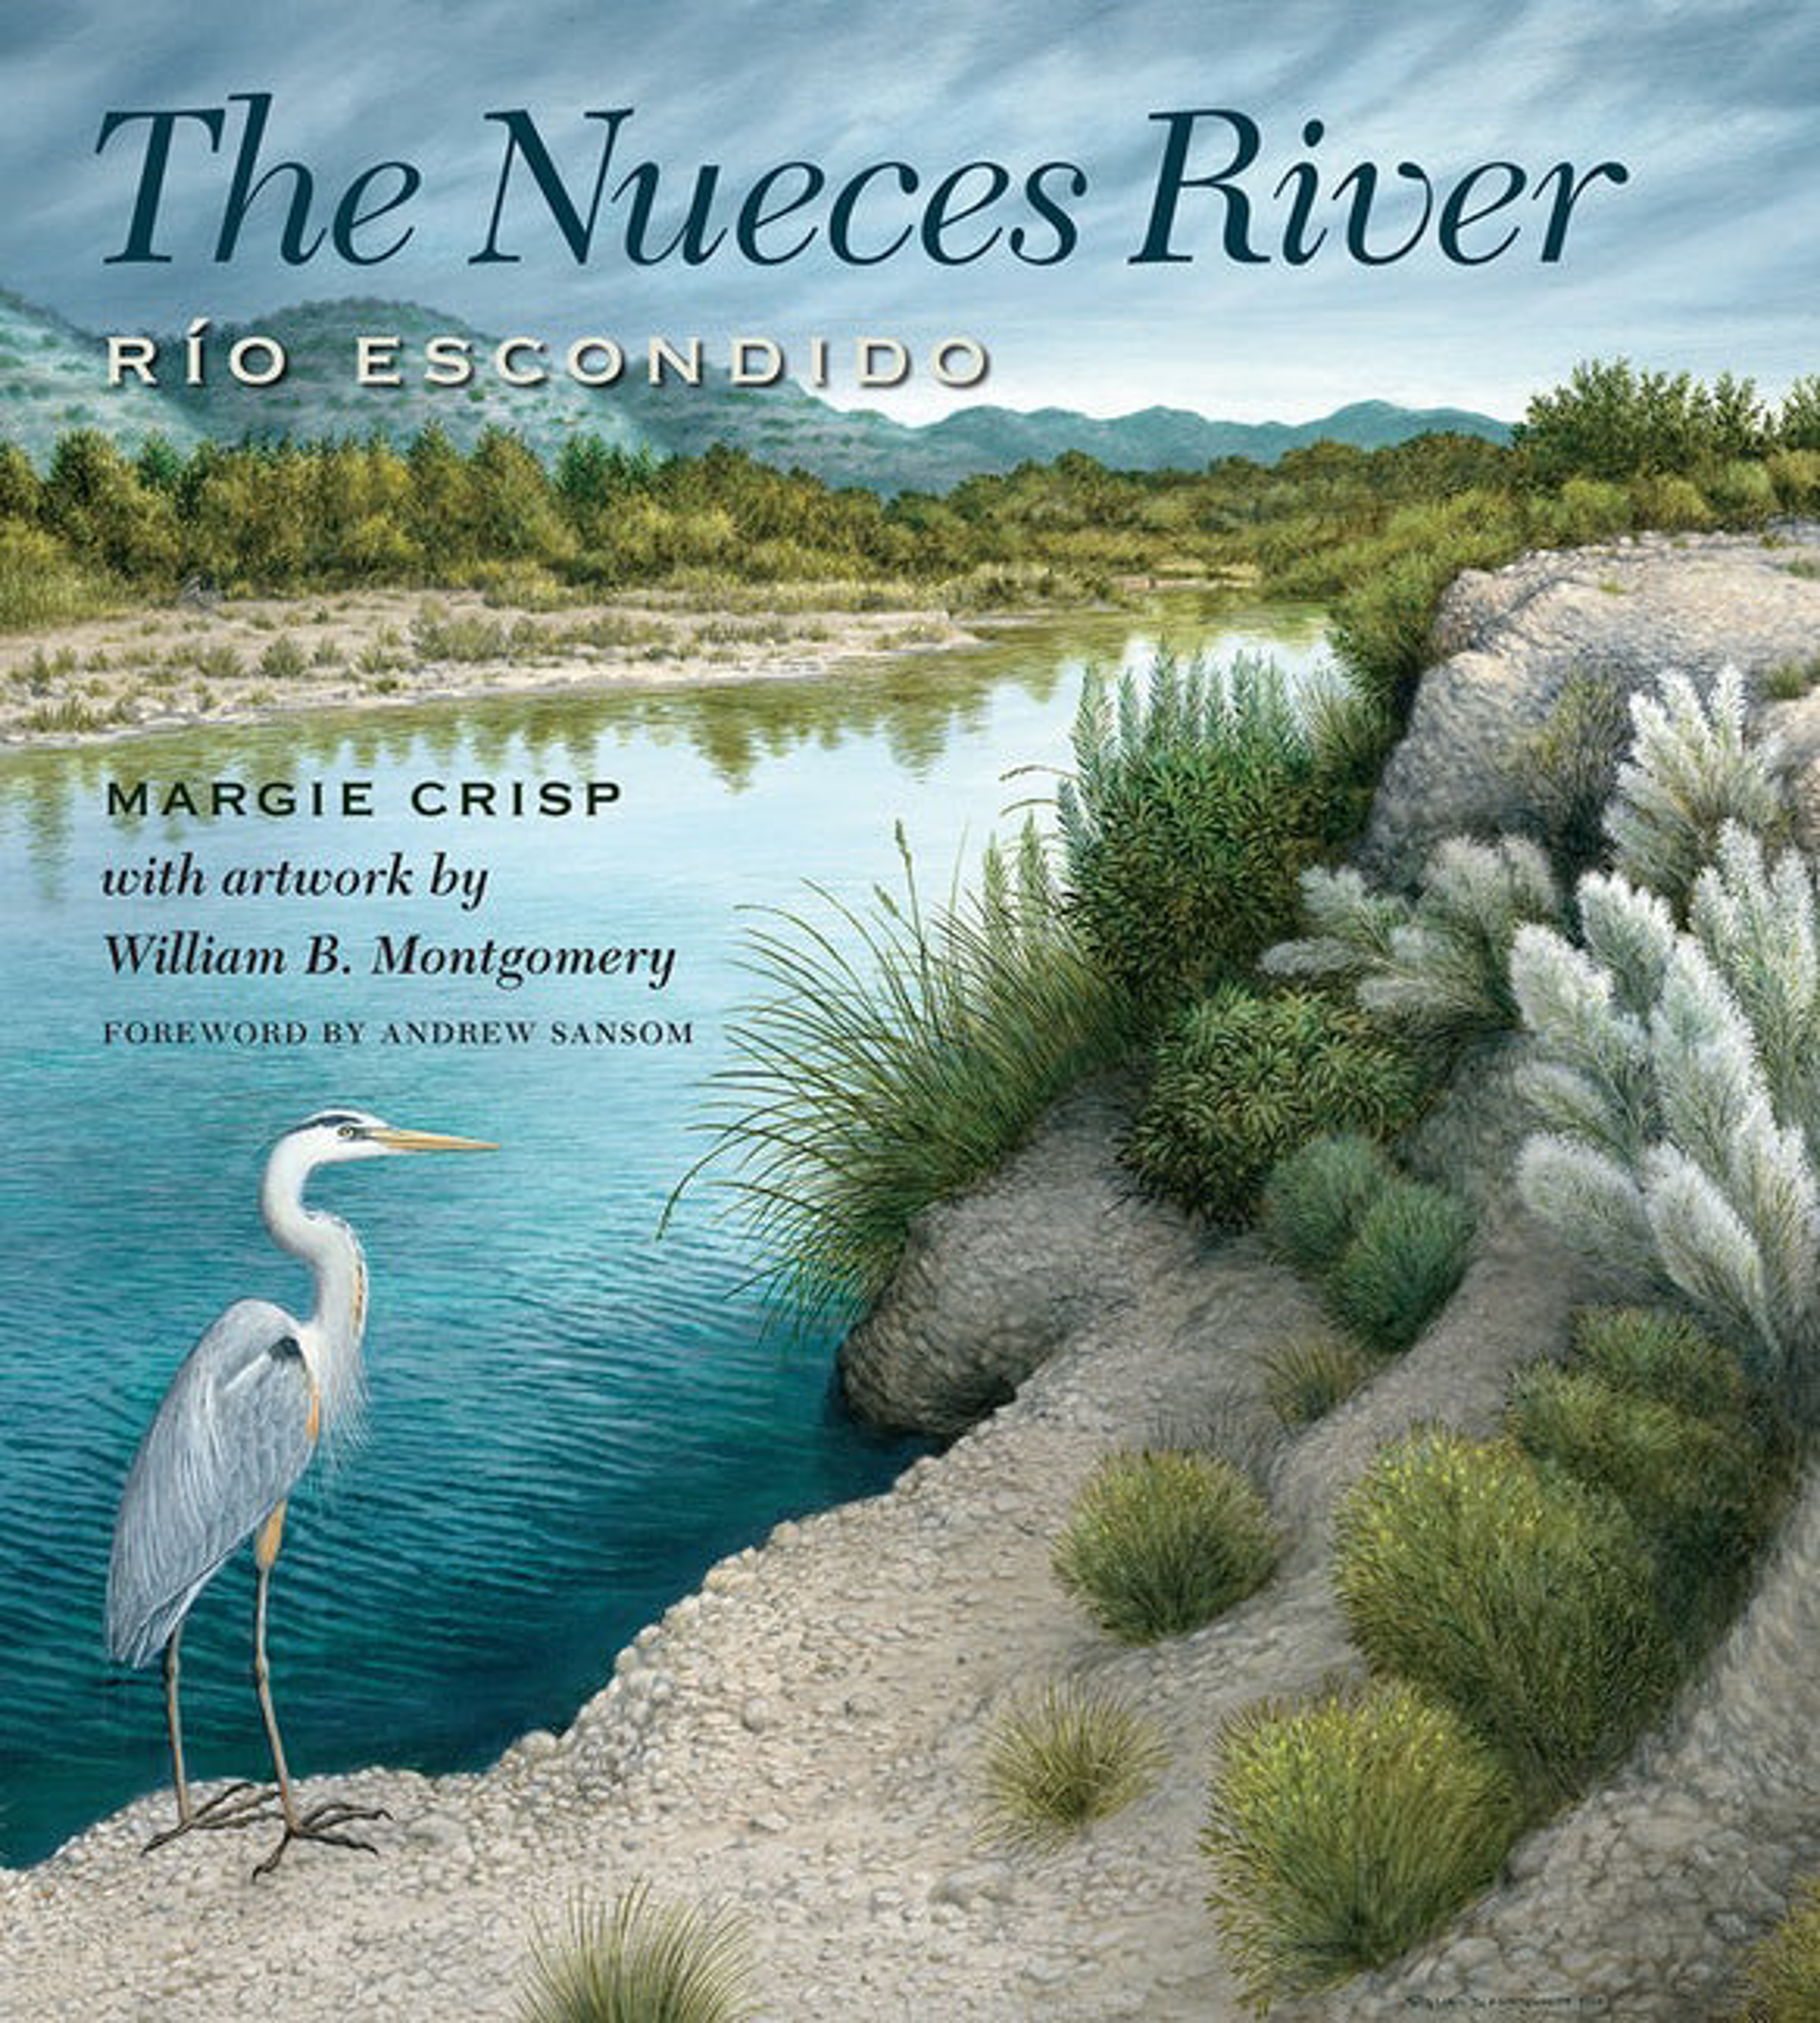 The Nueces River | Rio Escondido by Margie Crisp by Publications